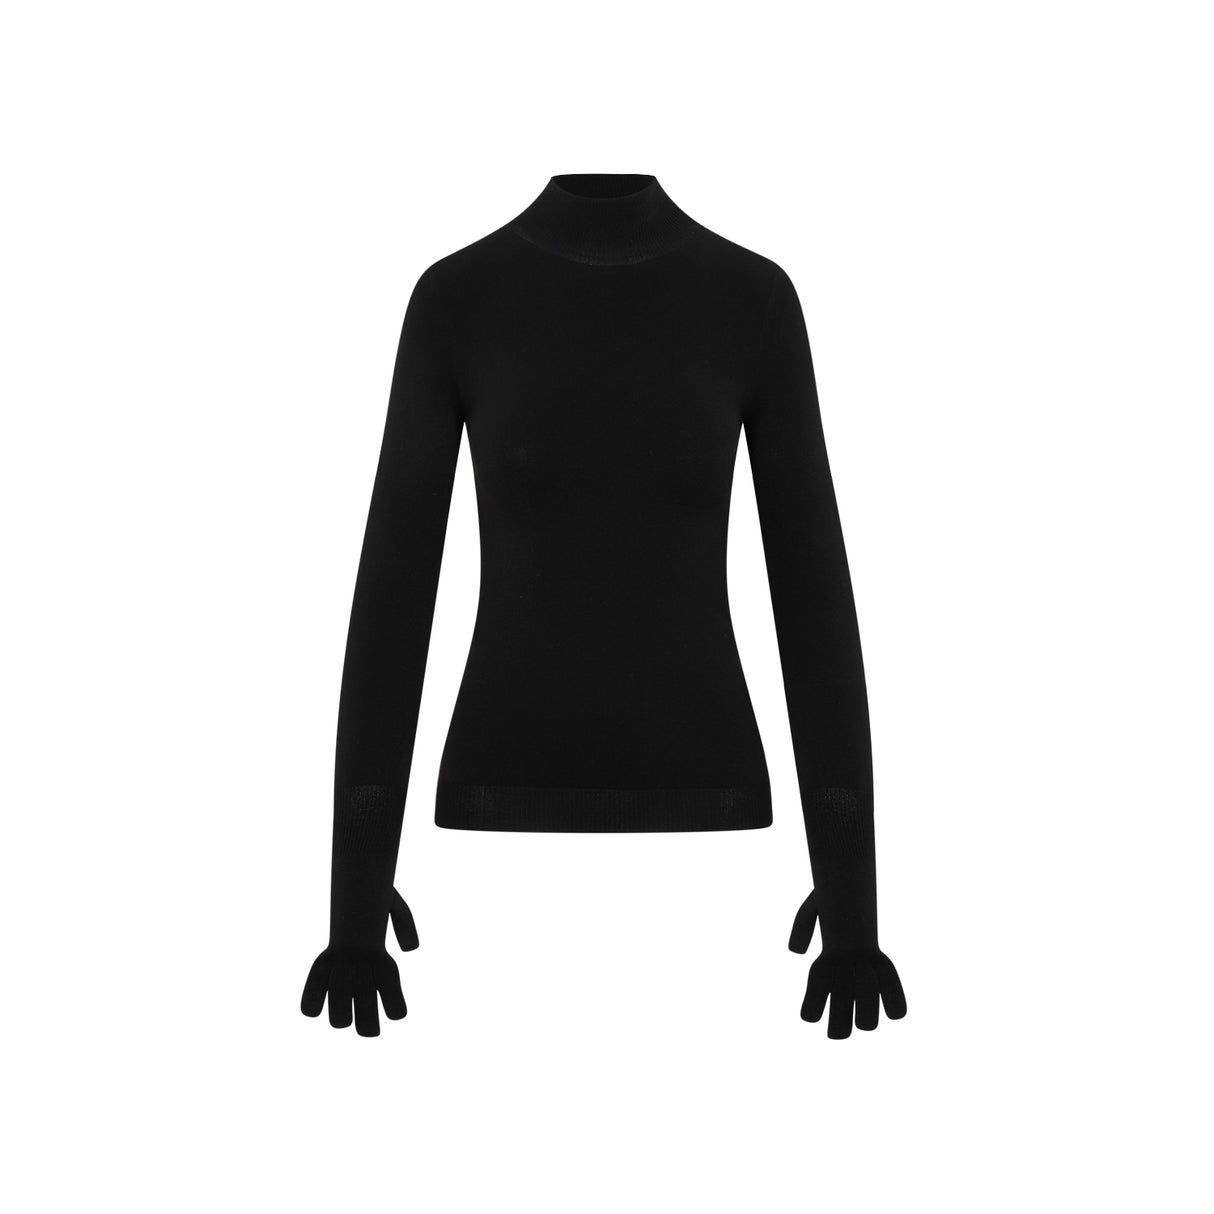 Áo len đen nữ thời trang cho mùa tới tổng hợp 23